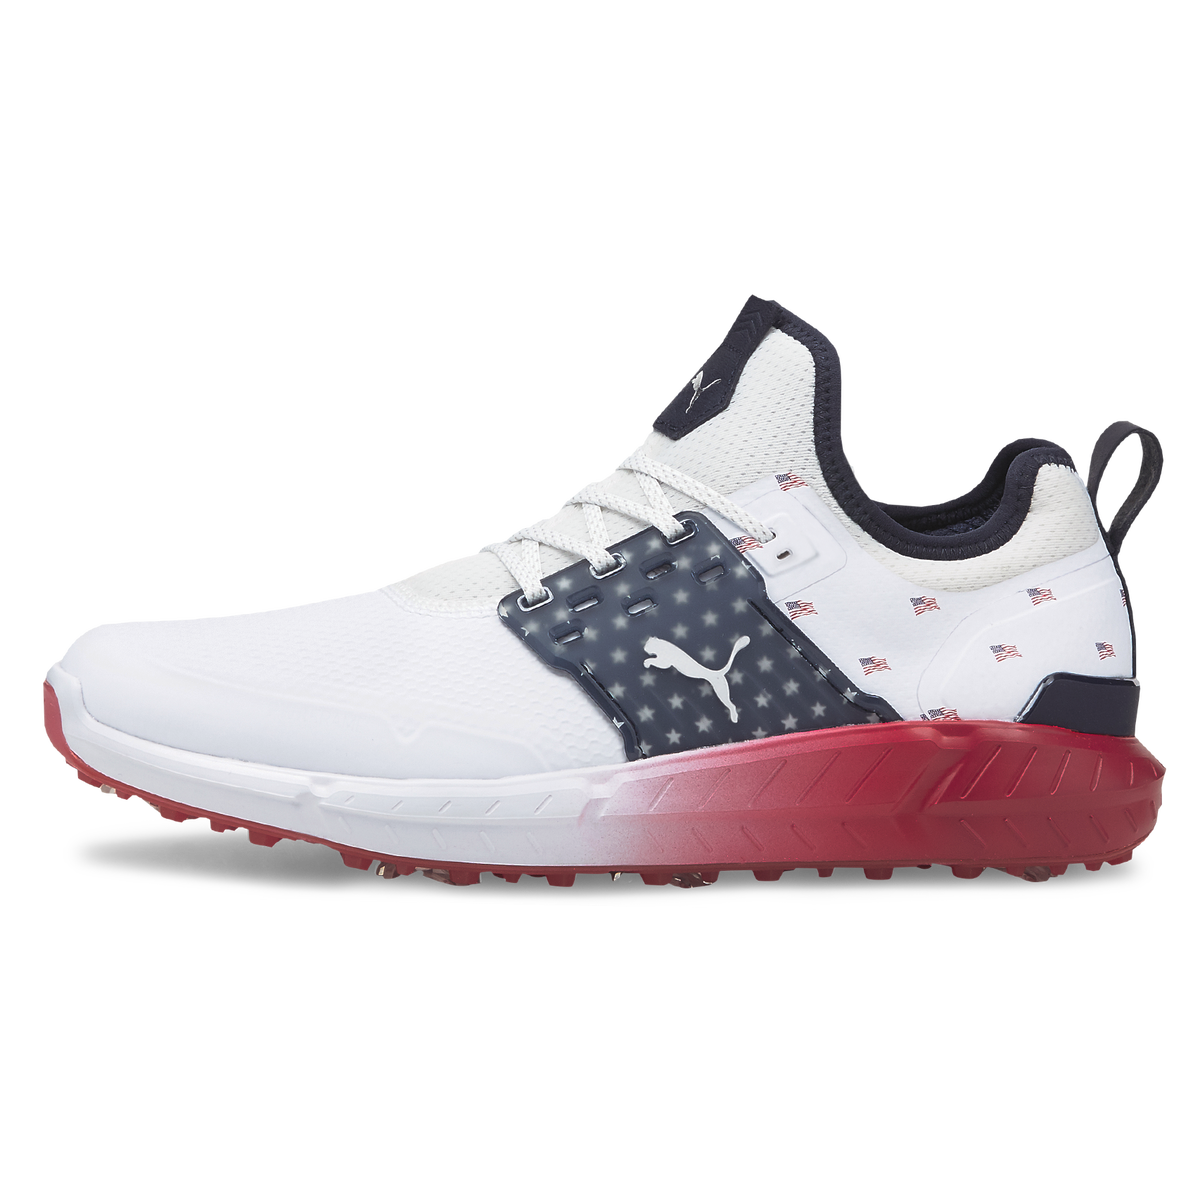 푸마 PUMA Limited Edition IGNITE Articulate Volition Mens Golf Shoe,White/Black/Red